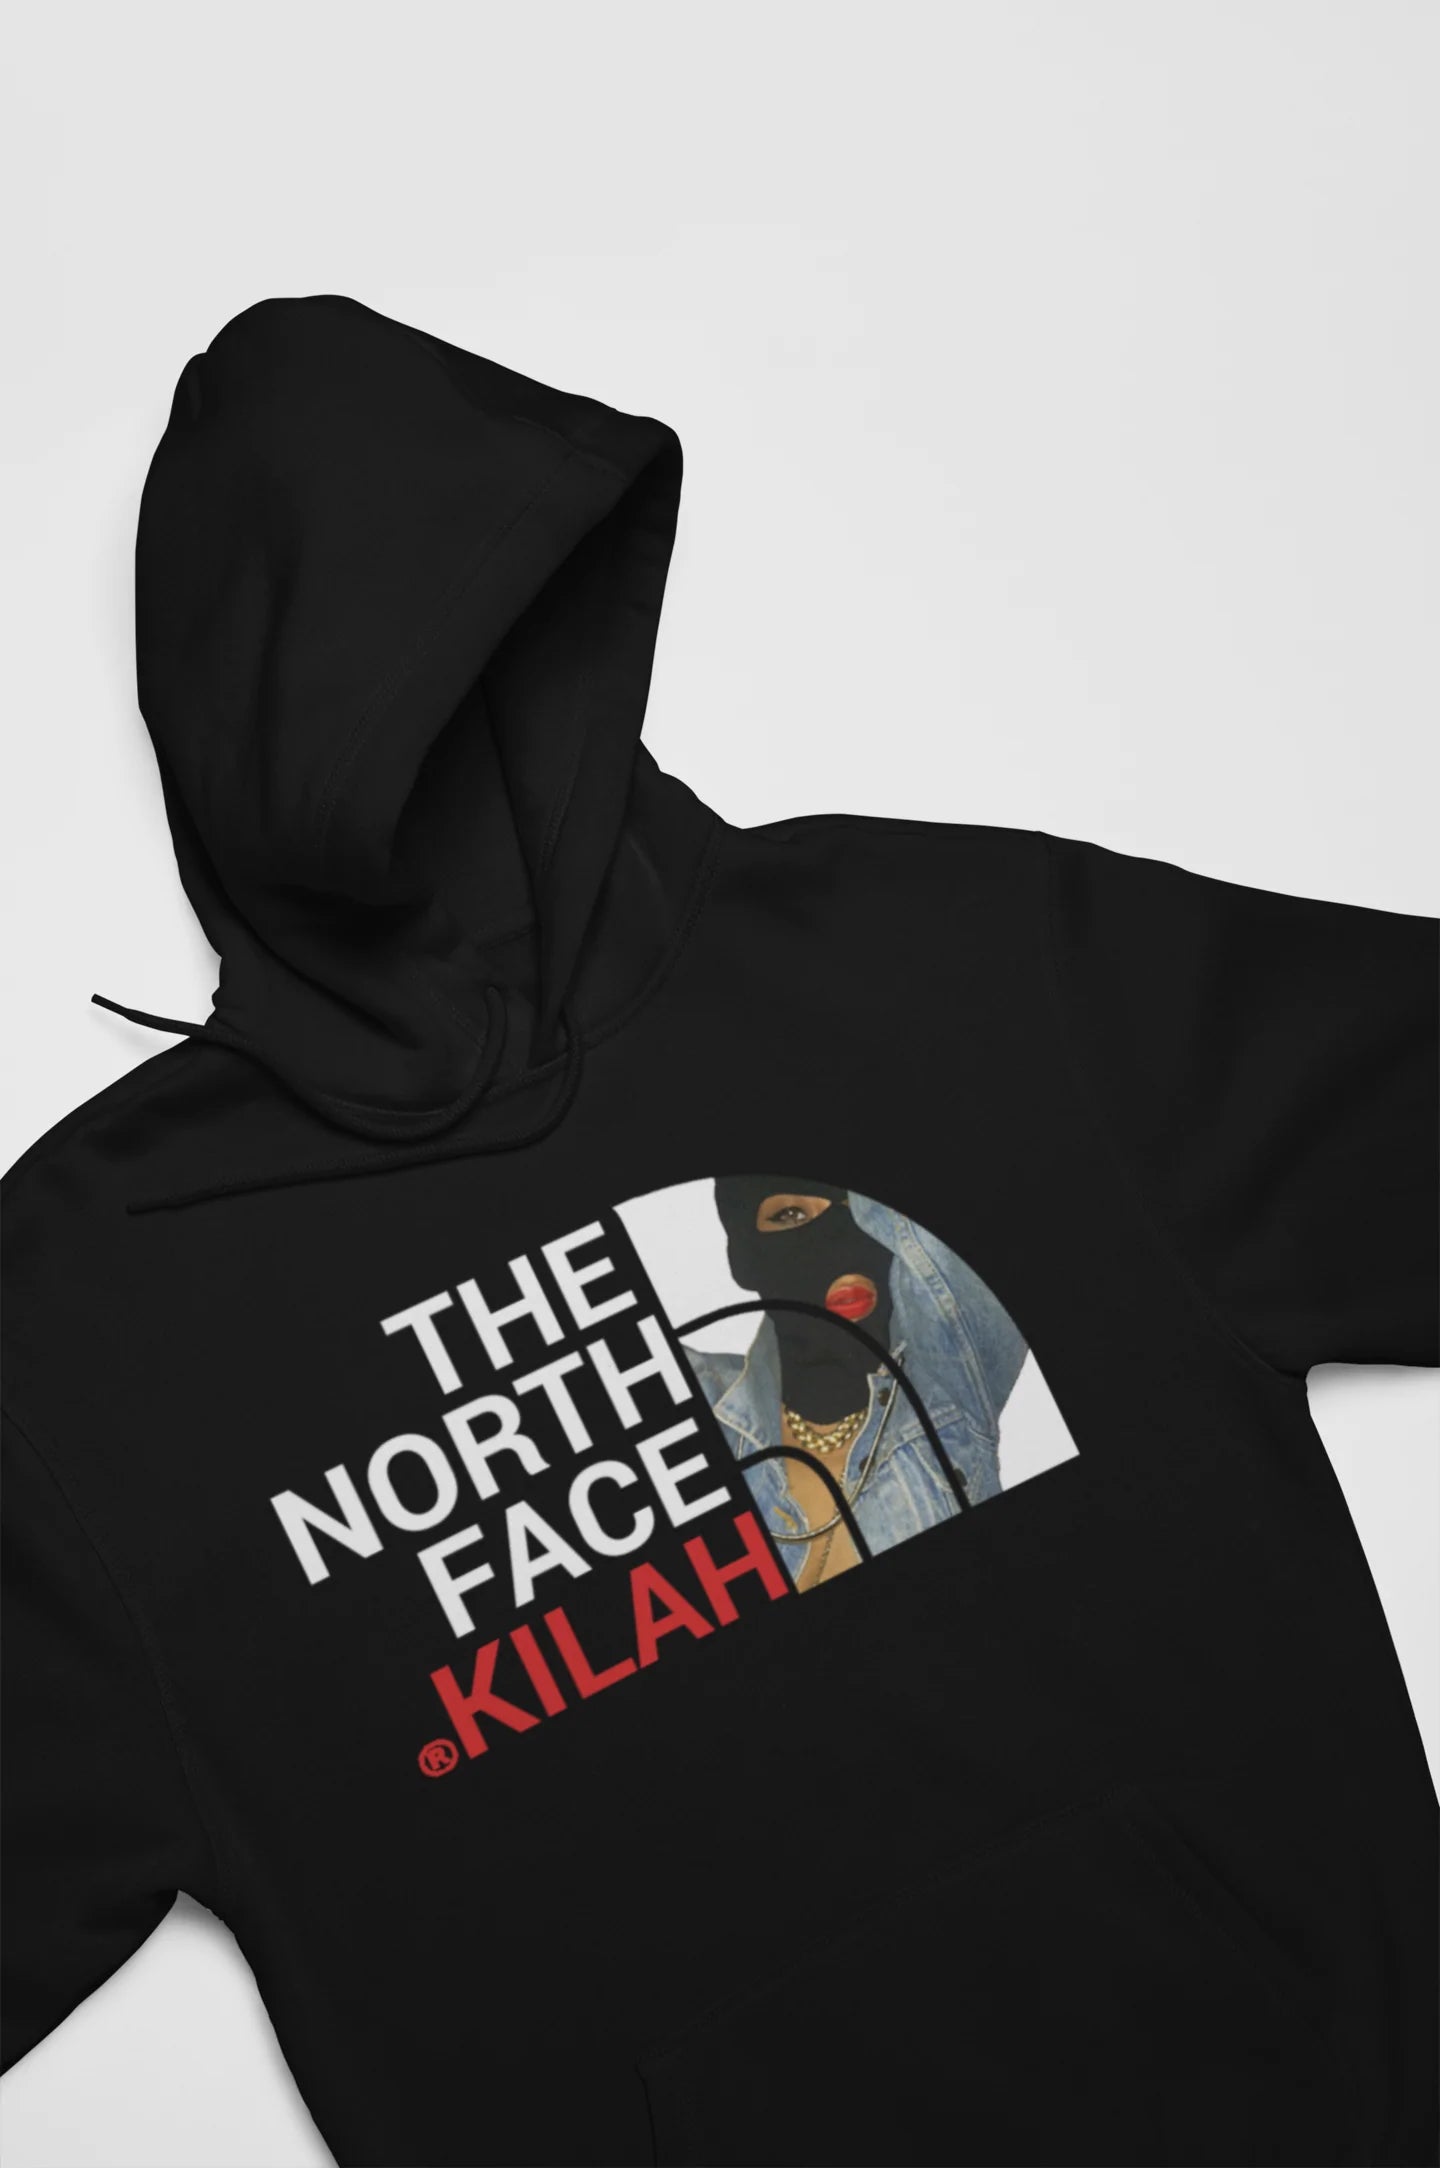 THE NORTH FACE KILAH